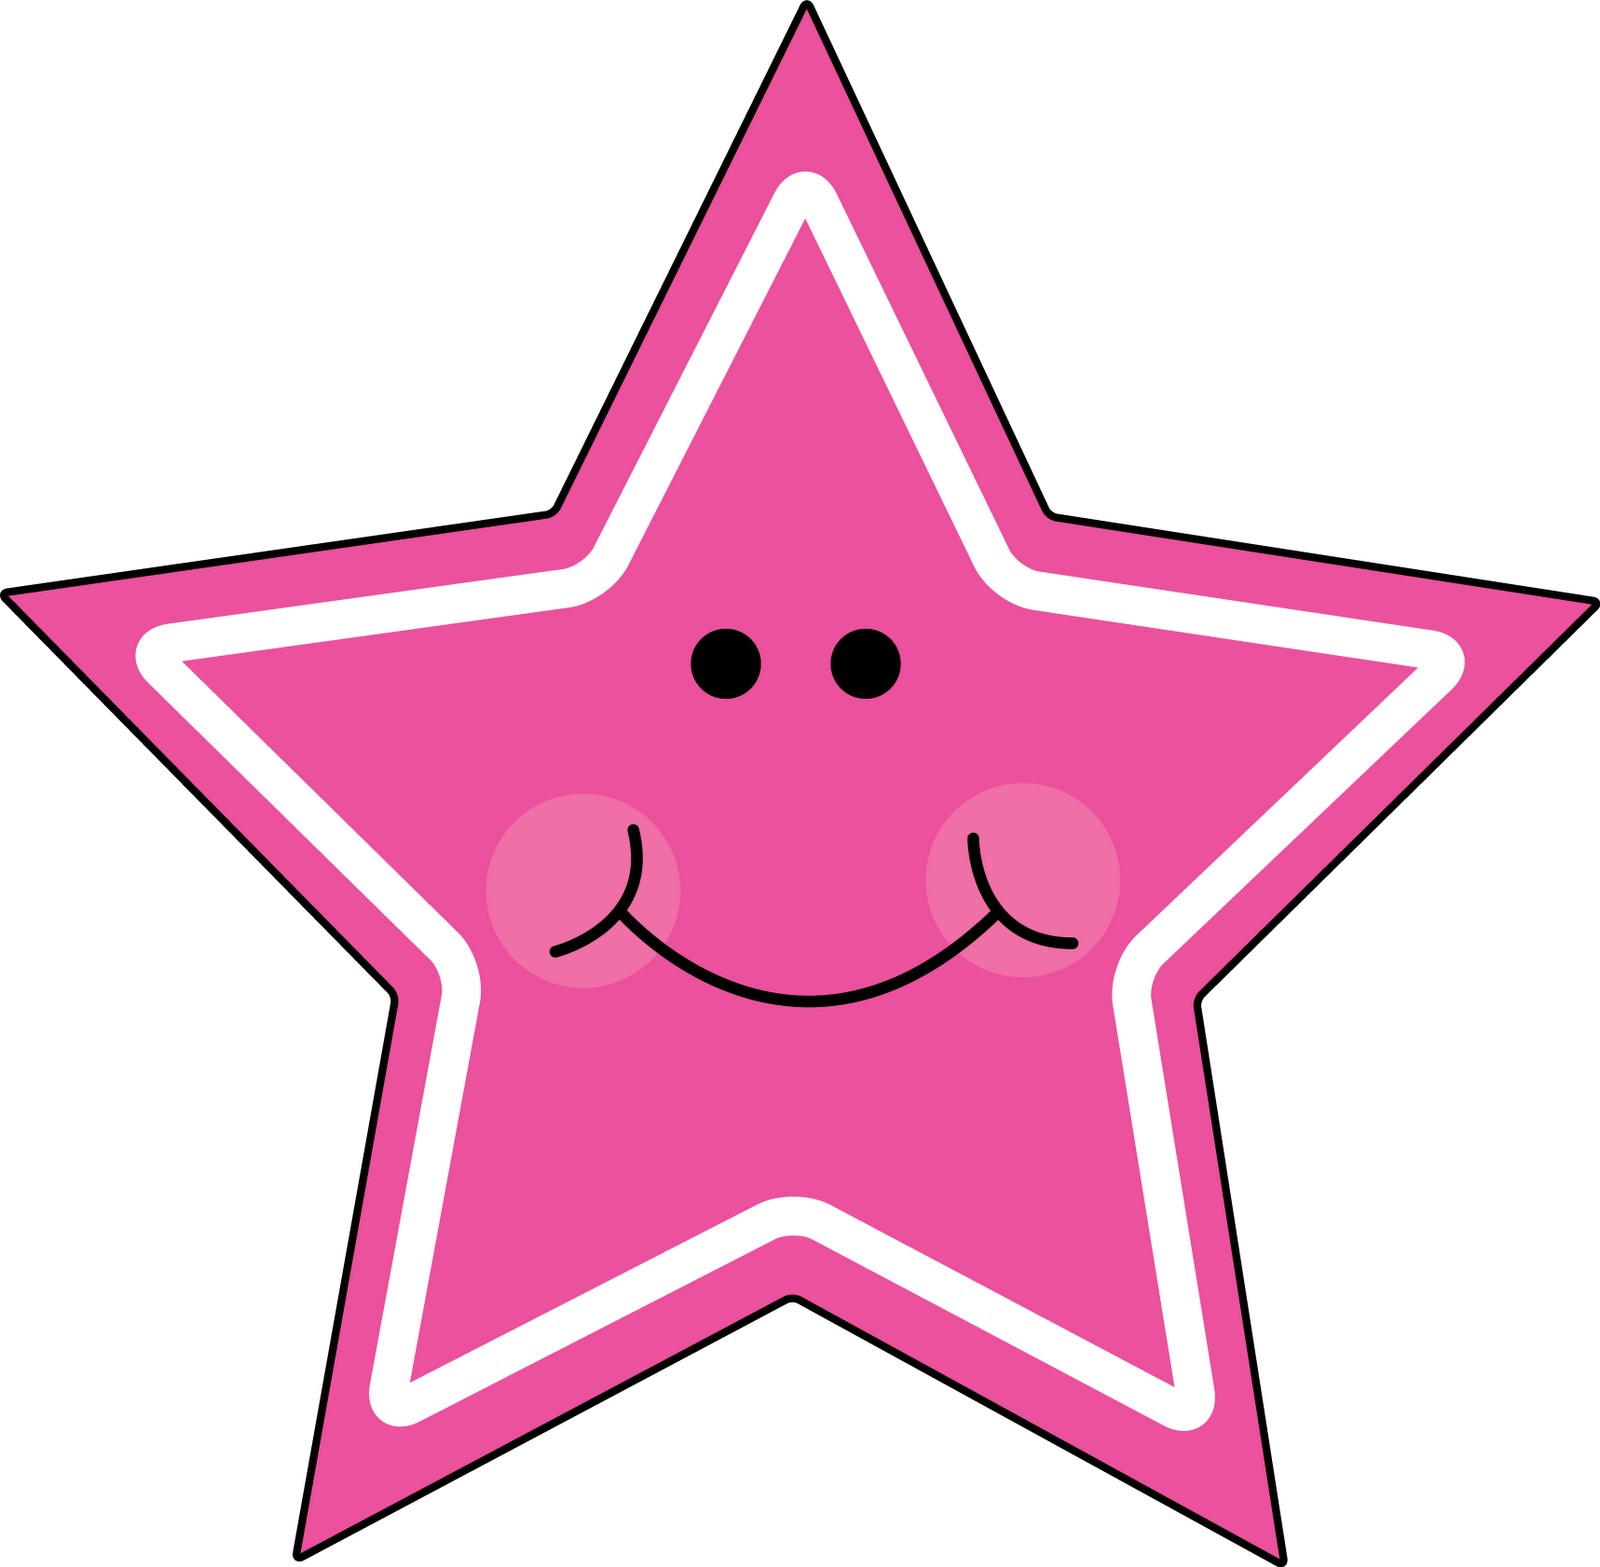 Pink Star drawing free image download